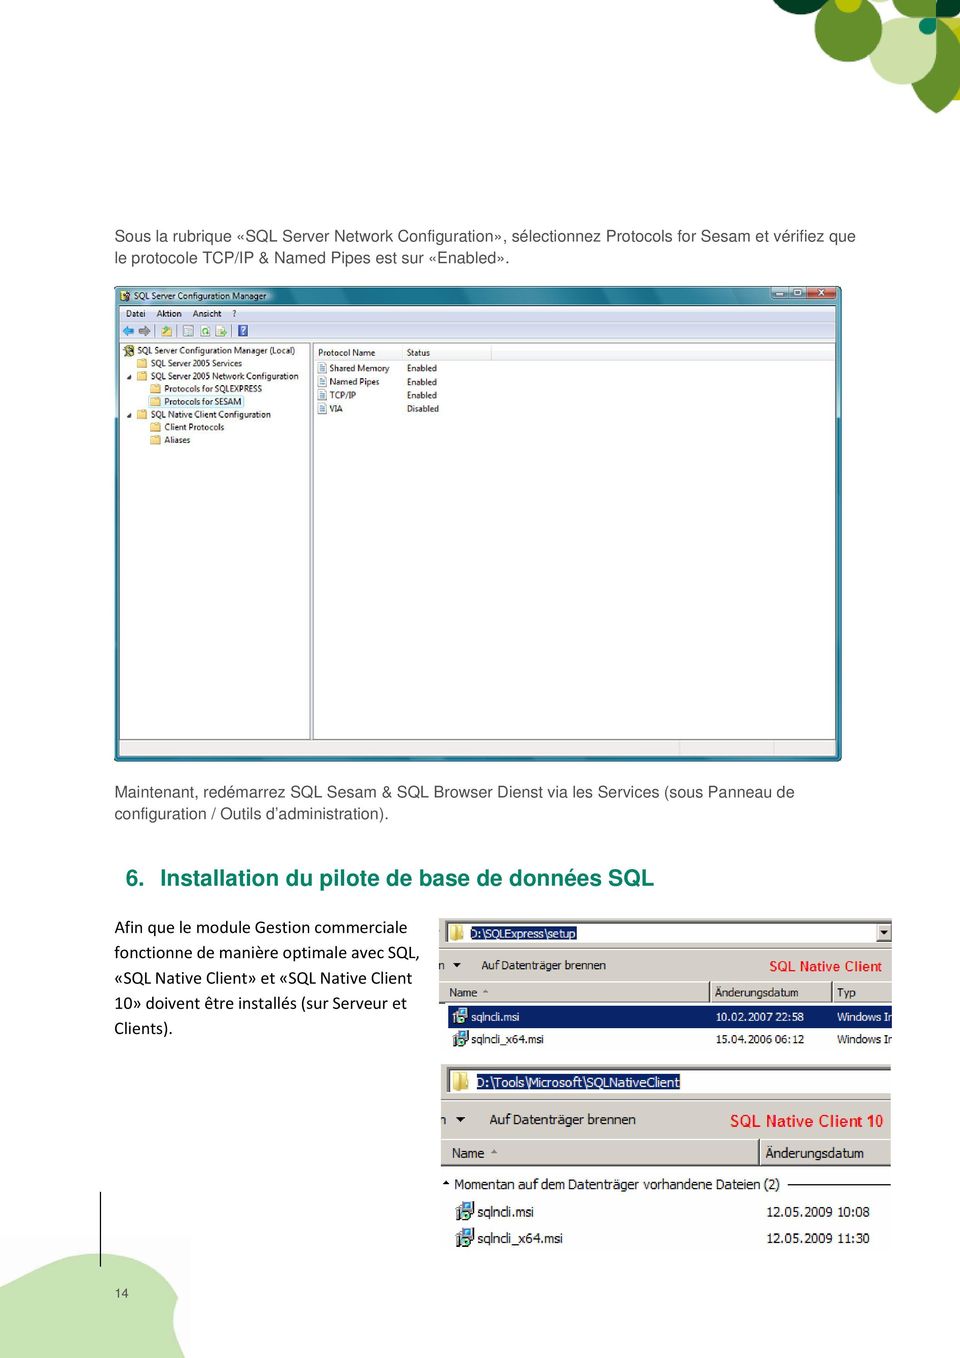 Maintenant, redémarrez SQL Sesam & SQL Browser Dienst via les Services (sous Panneau de configuration / Outils d